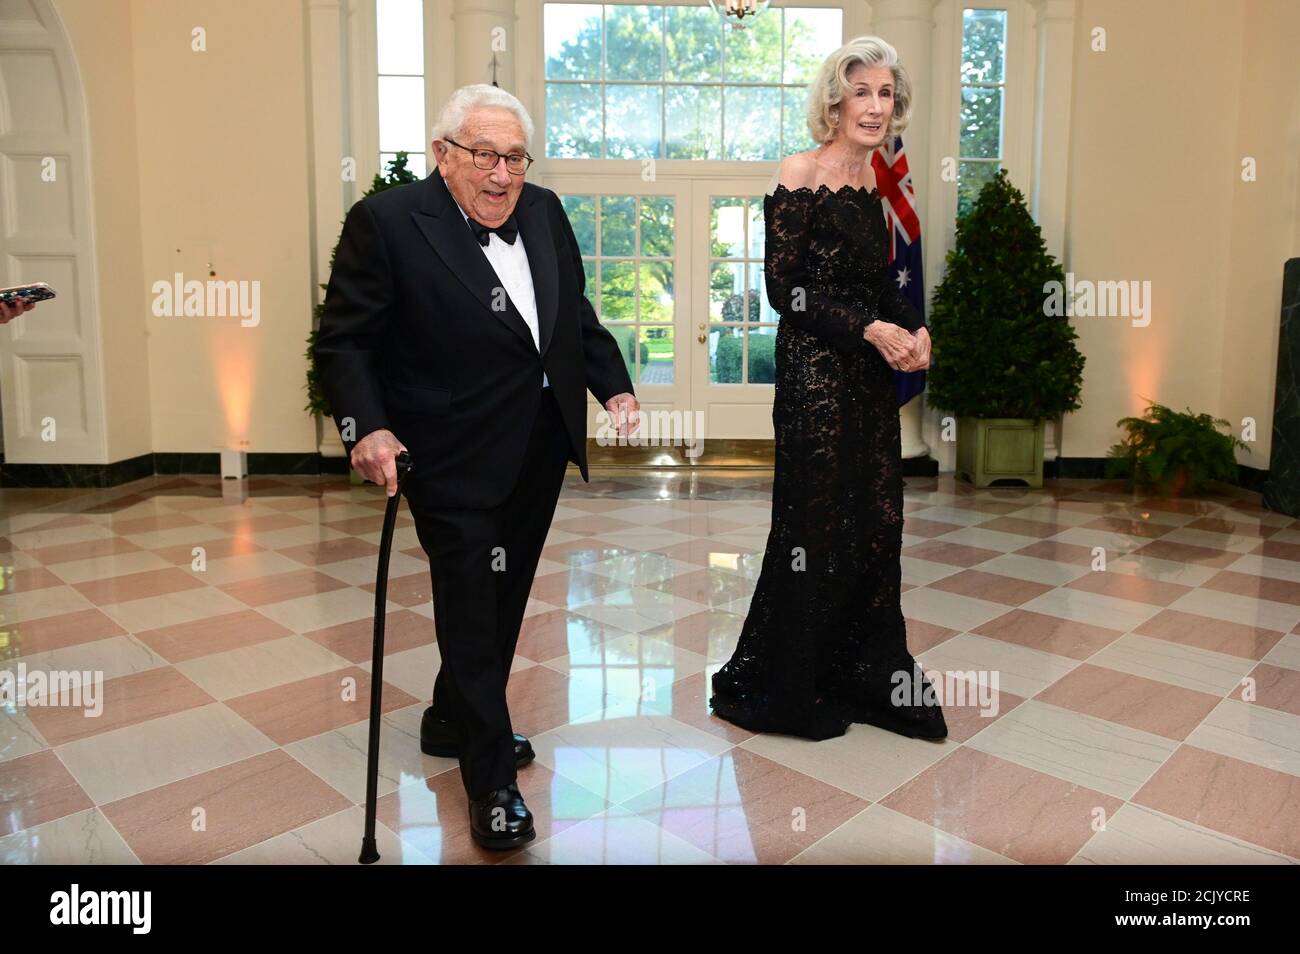 Henry Kissinger und seine Frau, Nancy Kissinger, kommen zu einem Staatsessen für Australiens Premierminister Scott Morrison im Weißen Haus in Washington, USA 20. September 2019. REUTERS/Erin Scott Stockfoto